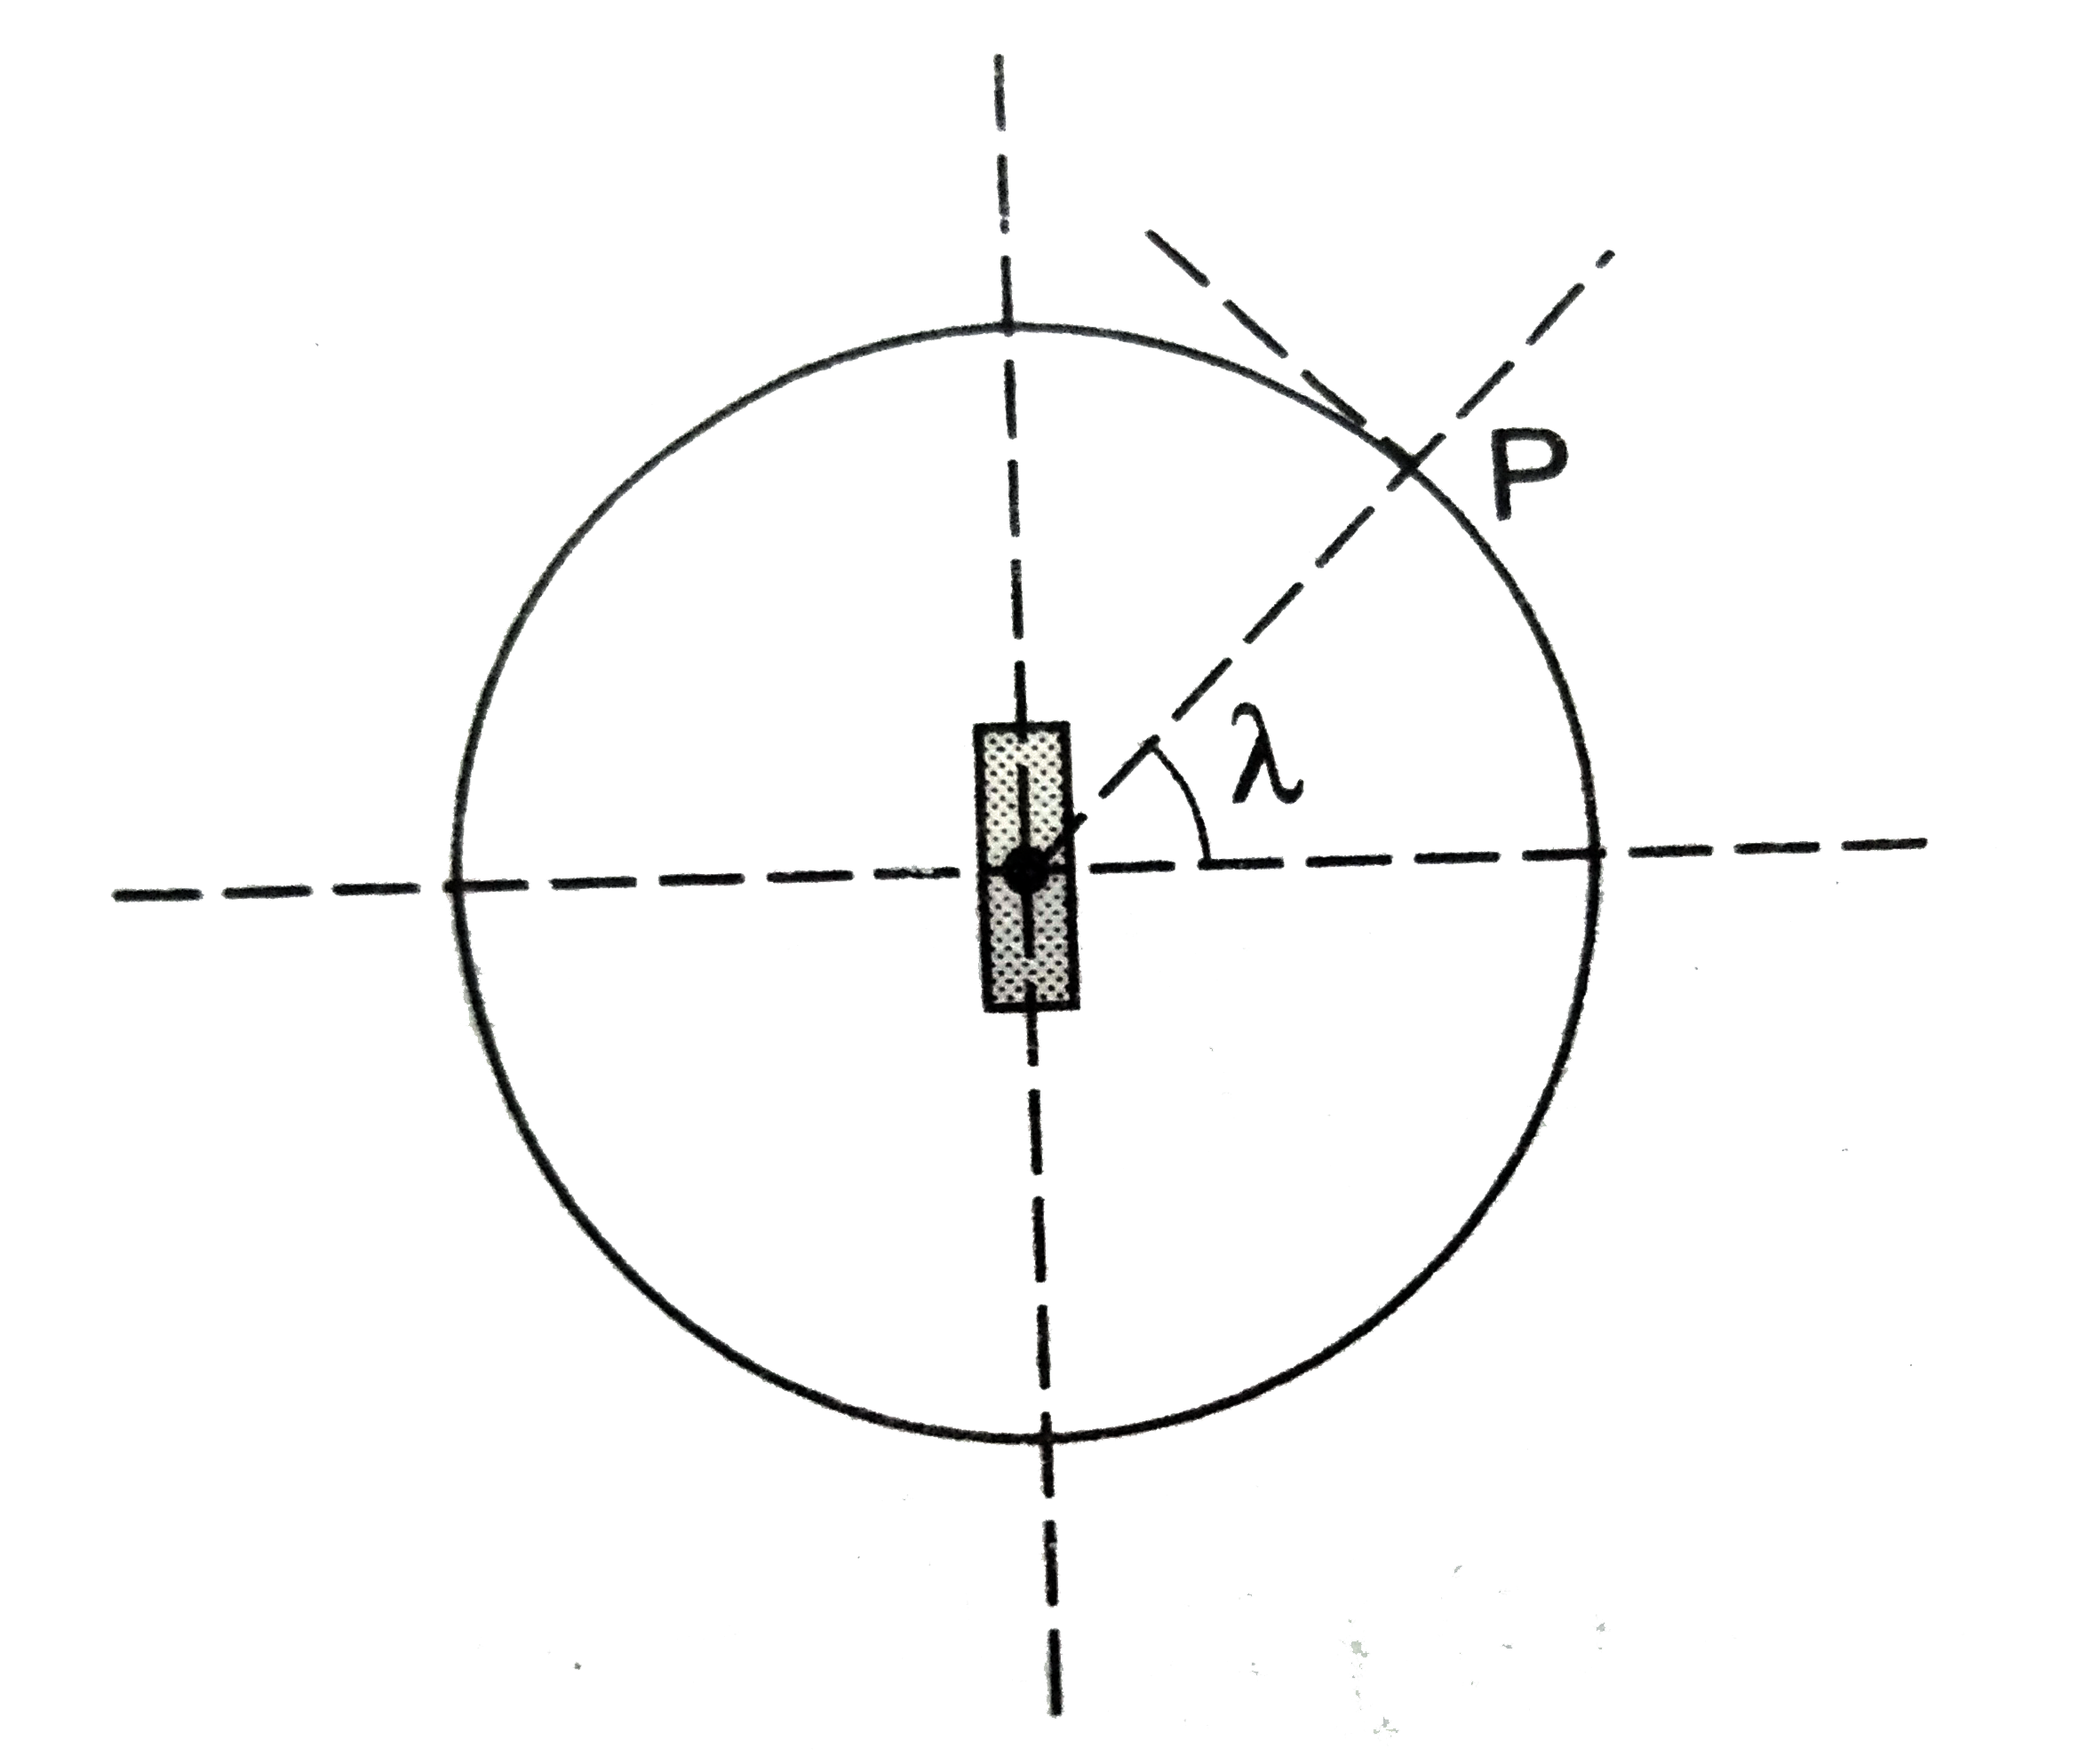 पार्थिव चुंबकत्व की व्याख्या के लिए एक काल्पनिक मॉडल प्रस्तुत किया जाता हैं जिसमें पृथ्वी के केंद्र पर स्थित m आघूर्ण का एक प्रबल चुंबक मान लेते हैं । अक्षांश (latitude) lamda के किसी स्थान  P पर नमन कोण का मान sigma प्रेक्षित होता हैं । पृथ्वी की त्रिज्या R मान लें ।      नमन - कोण  एंव अक्षांश lamda के बीच संबंध हैं